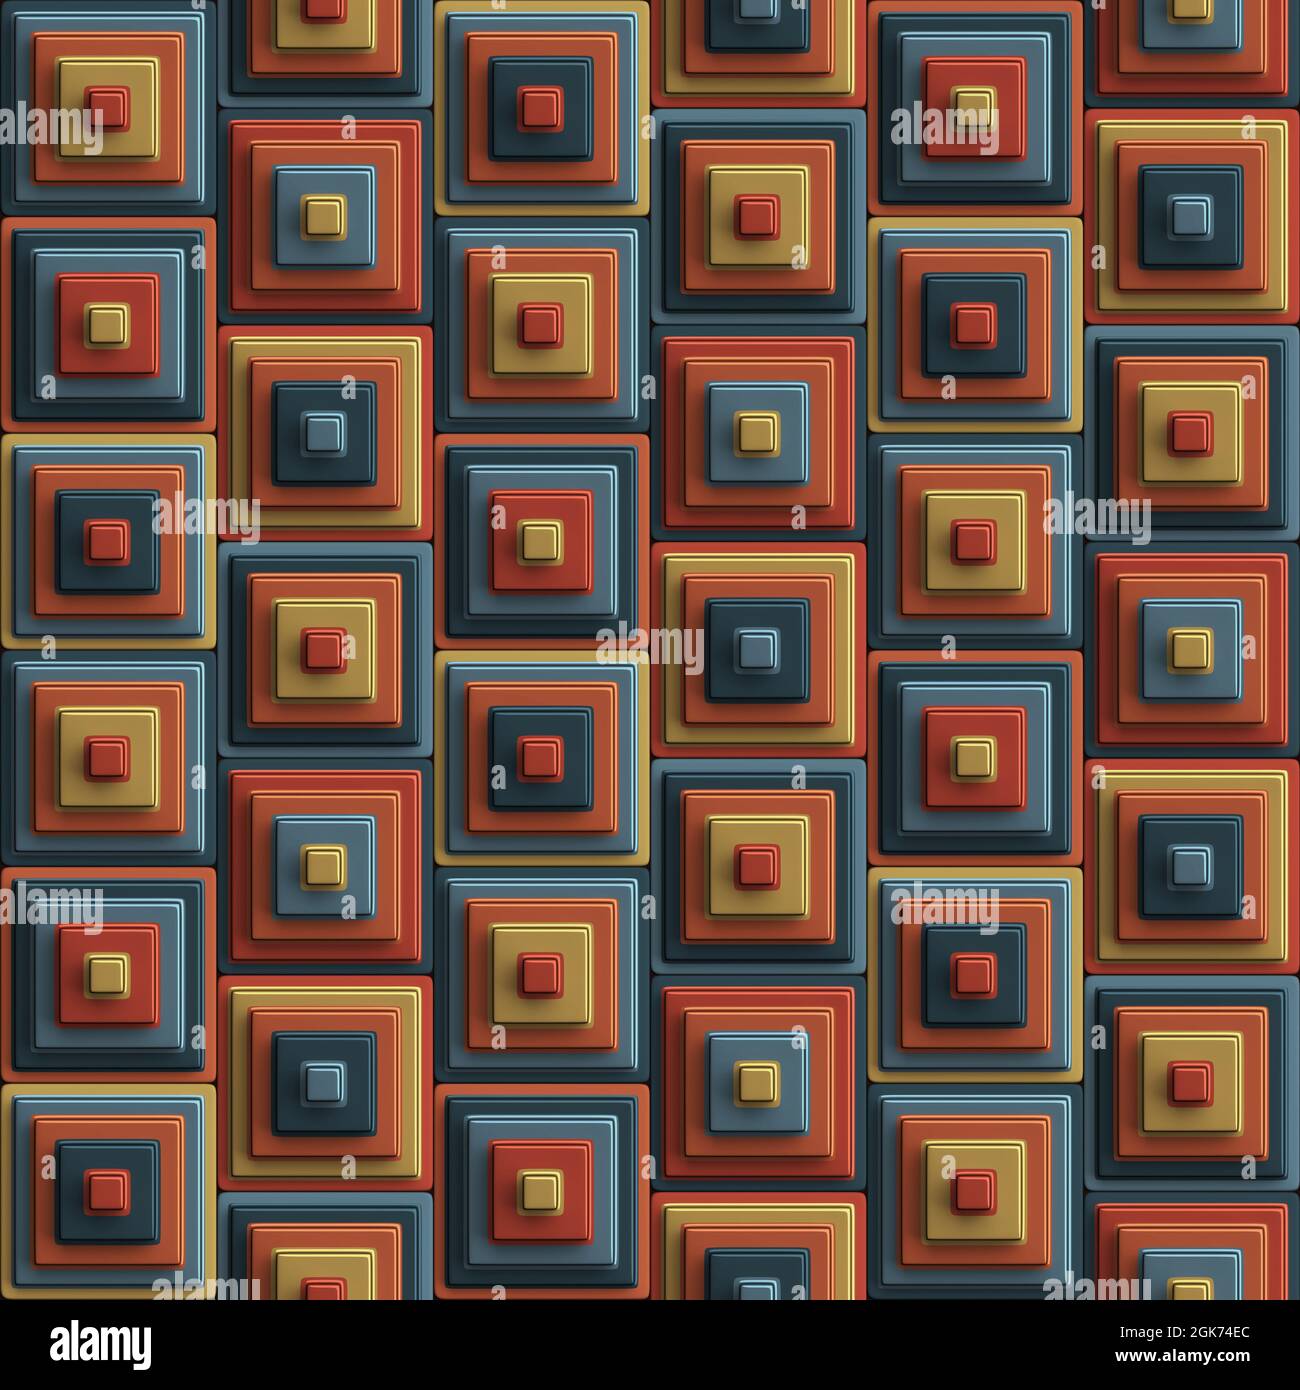 Mehrfarbige geometrische Komposition aus konzentrischen 3D-Würfeln in Orange und Grau. Nahtlos wiederholtes Muster. Stockfoto